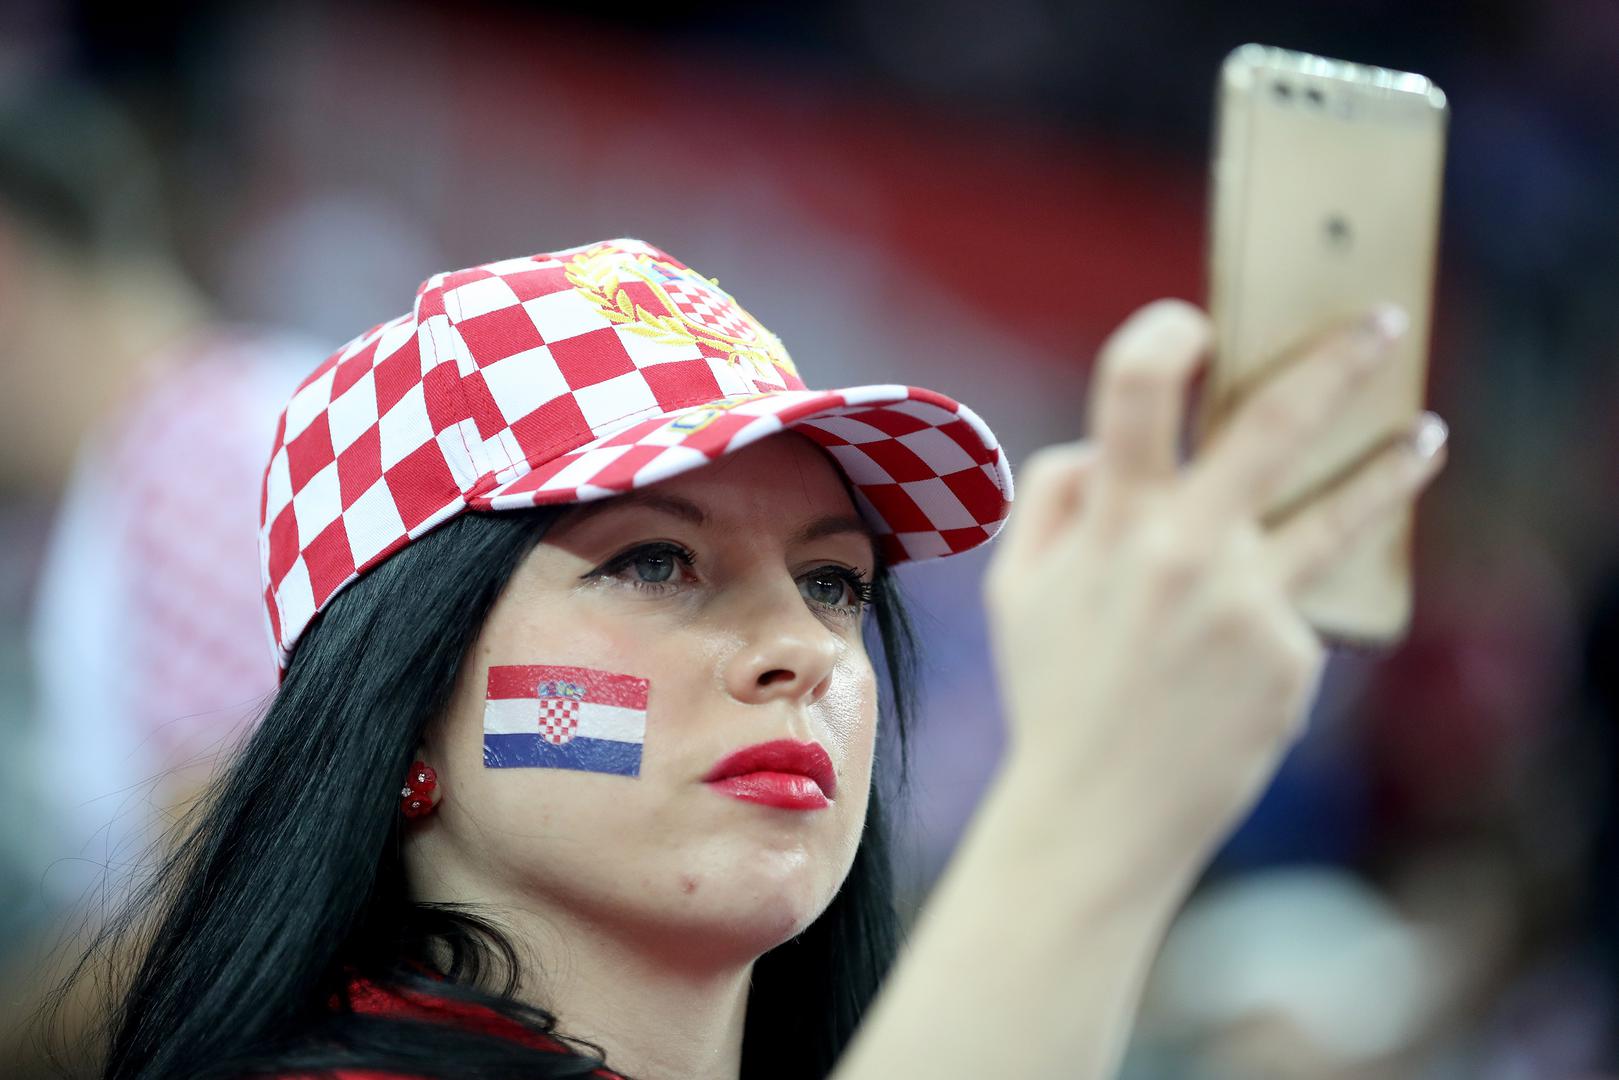 Atmosfera je sjana, a rasploženi navijači skandiraju "Hrvatska, Hrvatska". Publika s oduševljenjem dočekuje svaki gol Hrvatske, dok kod francuskih napada zviždi cijela dvorana. 